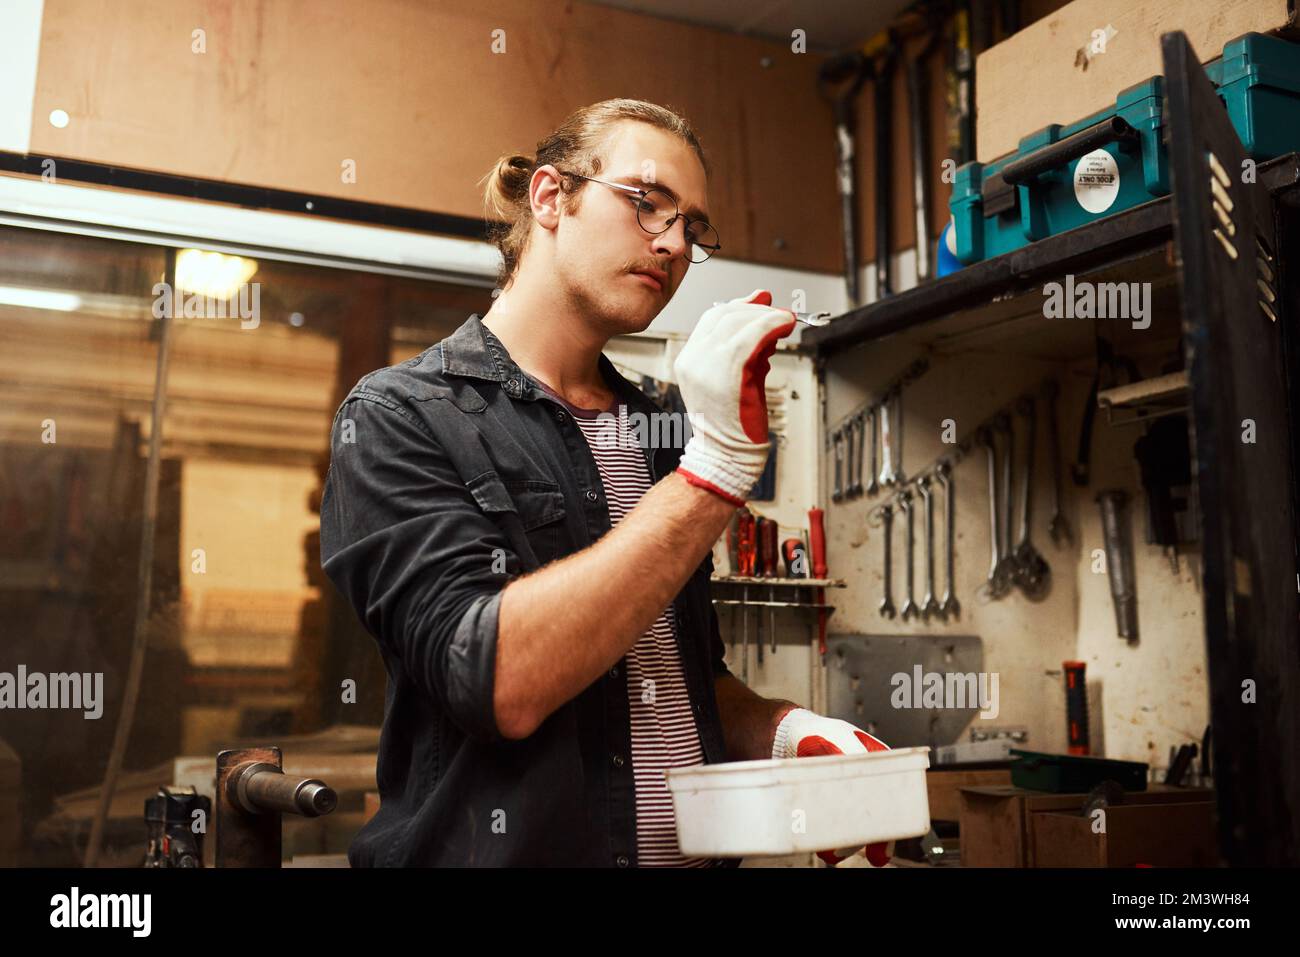 Das sollte die richtige Größe haben. Ein fokussierter junger Zimmermann, der einen kleinen Schraubenschlüssel in der Hand hält, um ihn nachts in seiner Werkstatt zu benutzen. Stockfoto